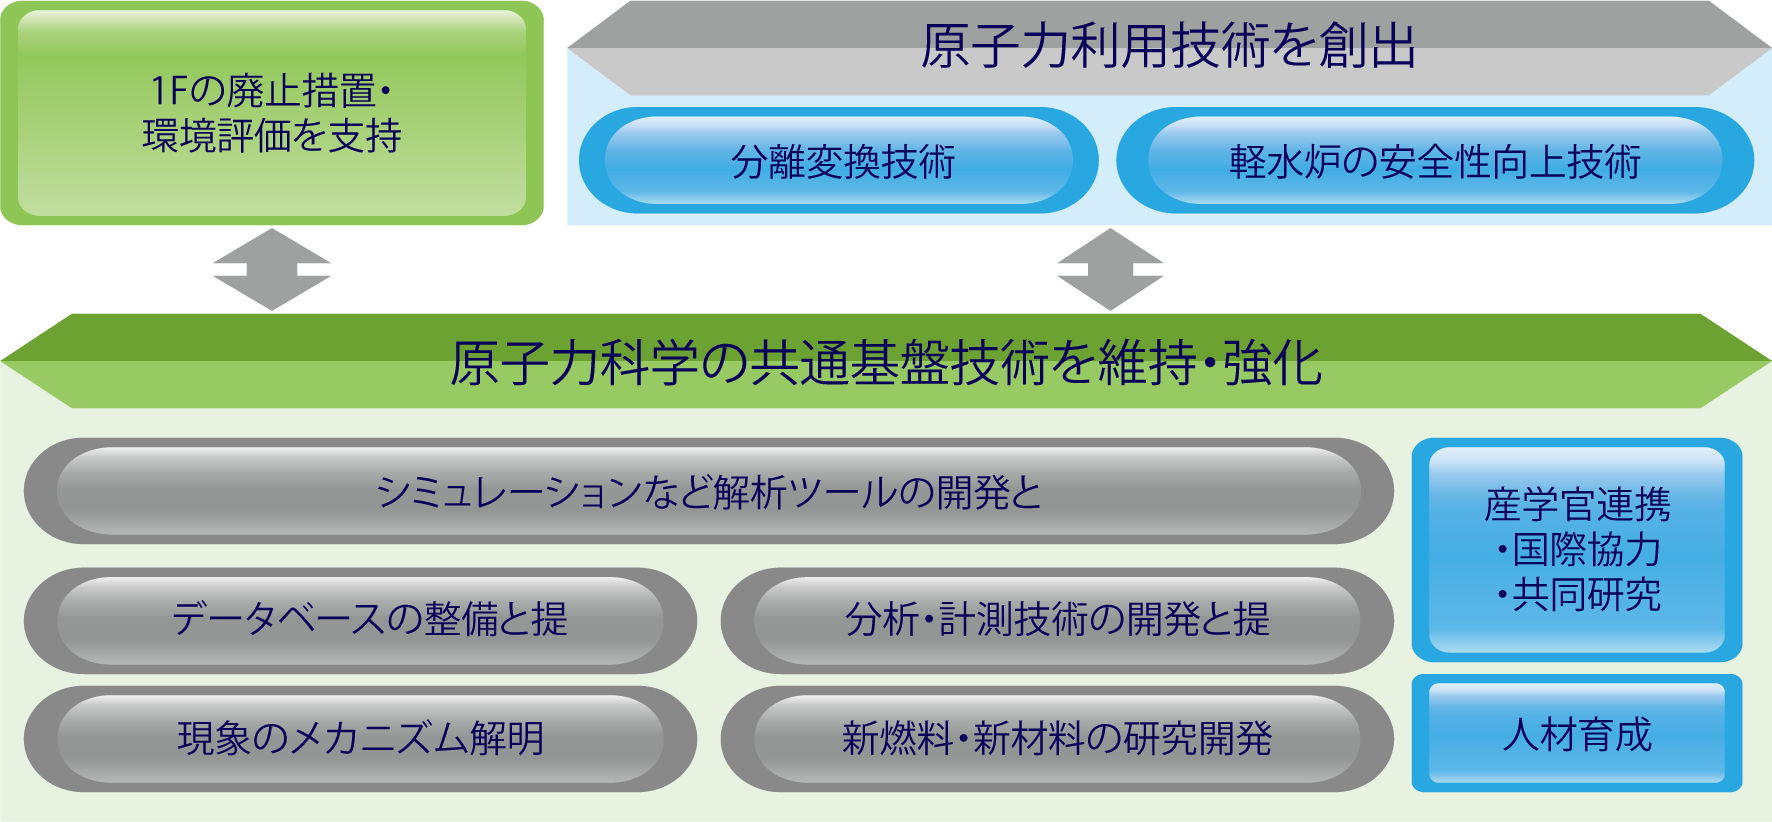 図4-1　原子力基礎工学研究の概要